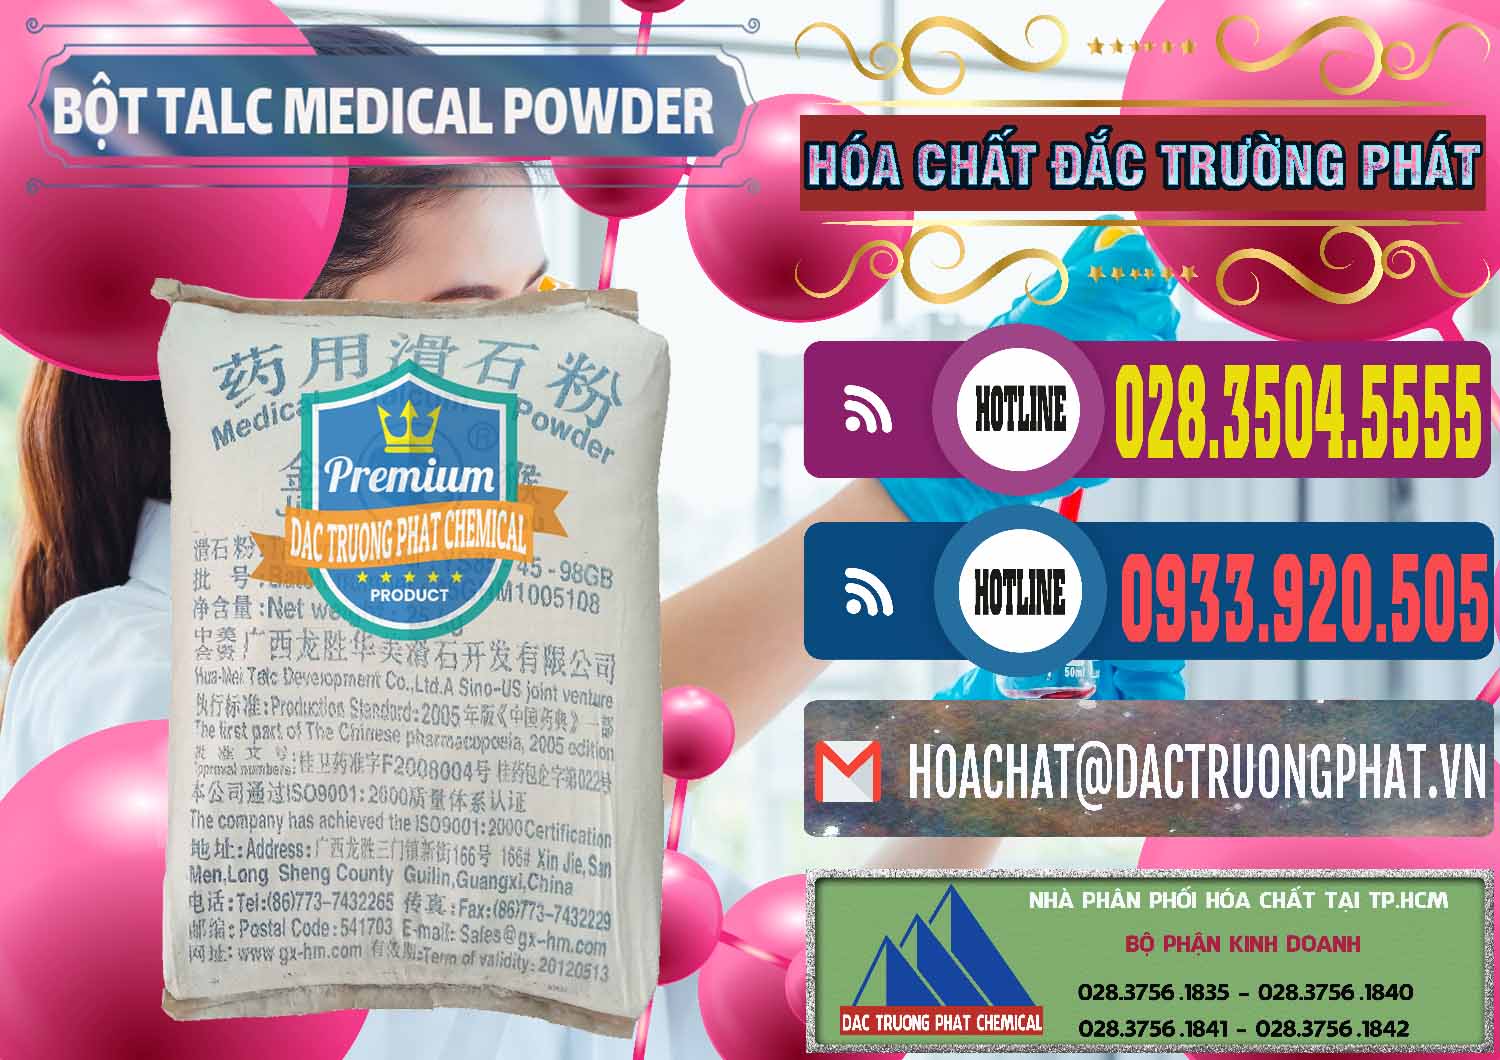 Cty cung cấp _ bán Bột Talc Medical Powder Trung Quốc China - 0036 - Cty bán và cung cấp hóa chất tại TP.HCM - muabanhoachat.com.vn